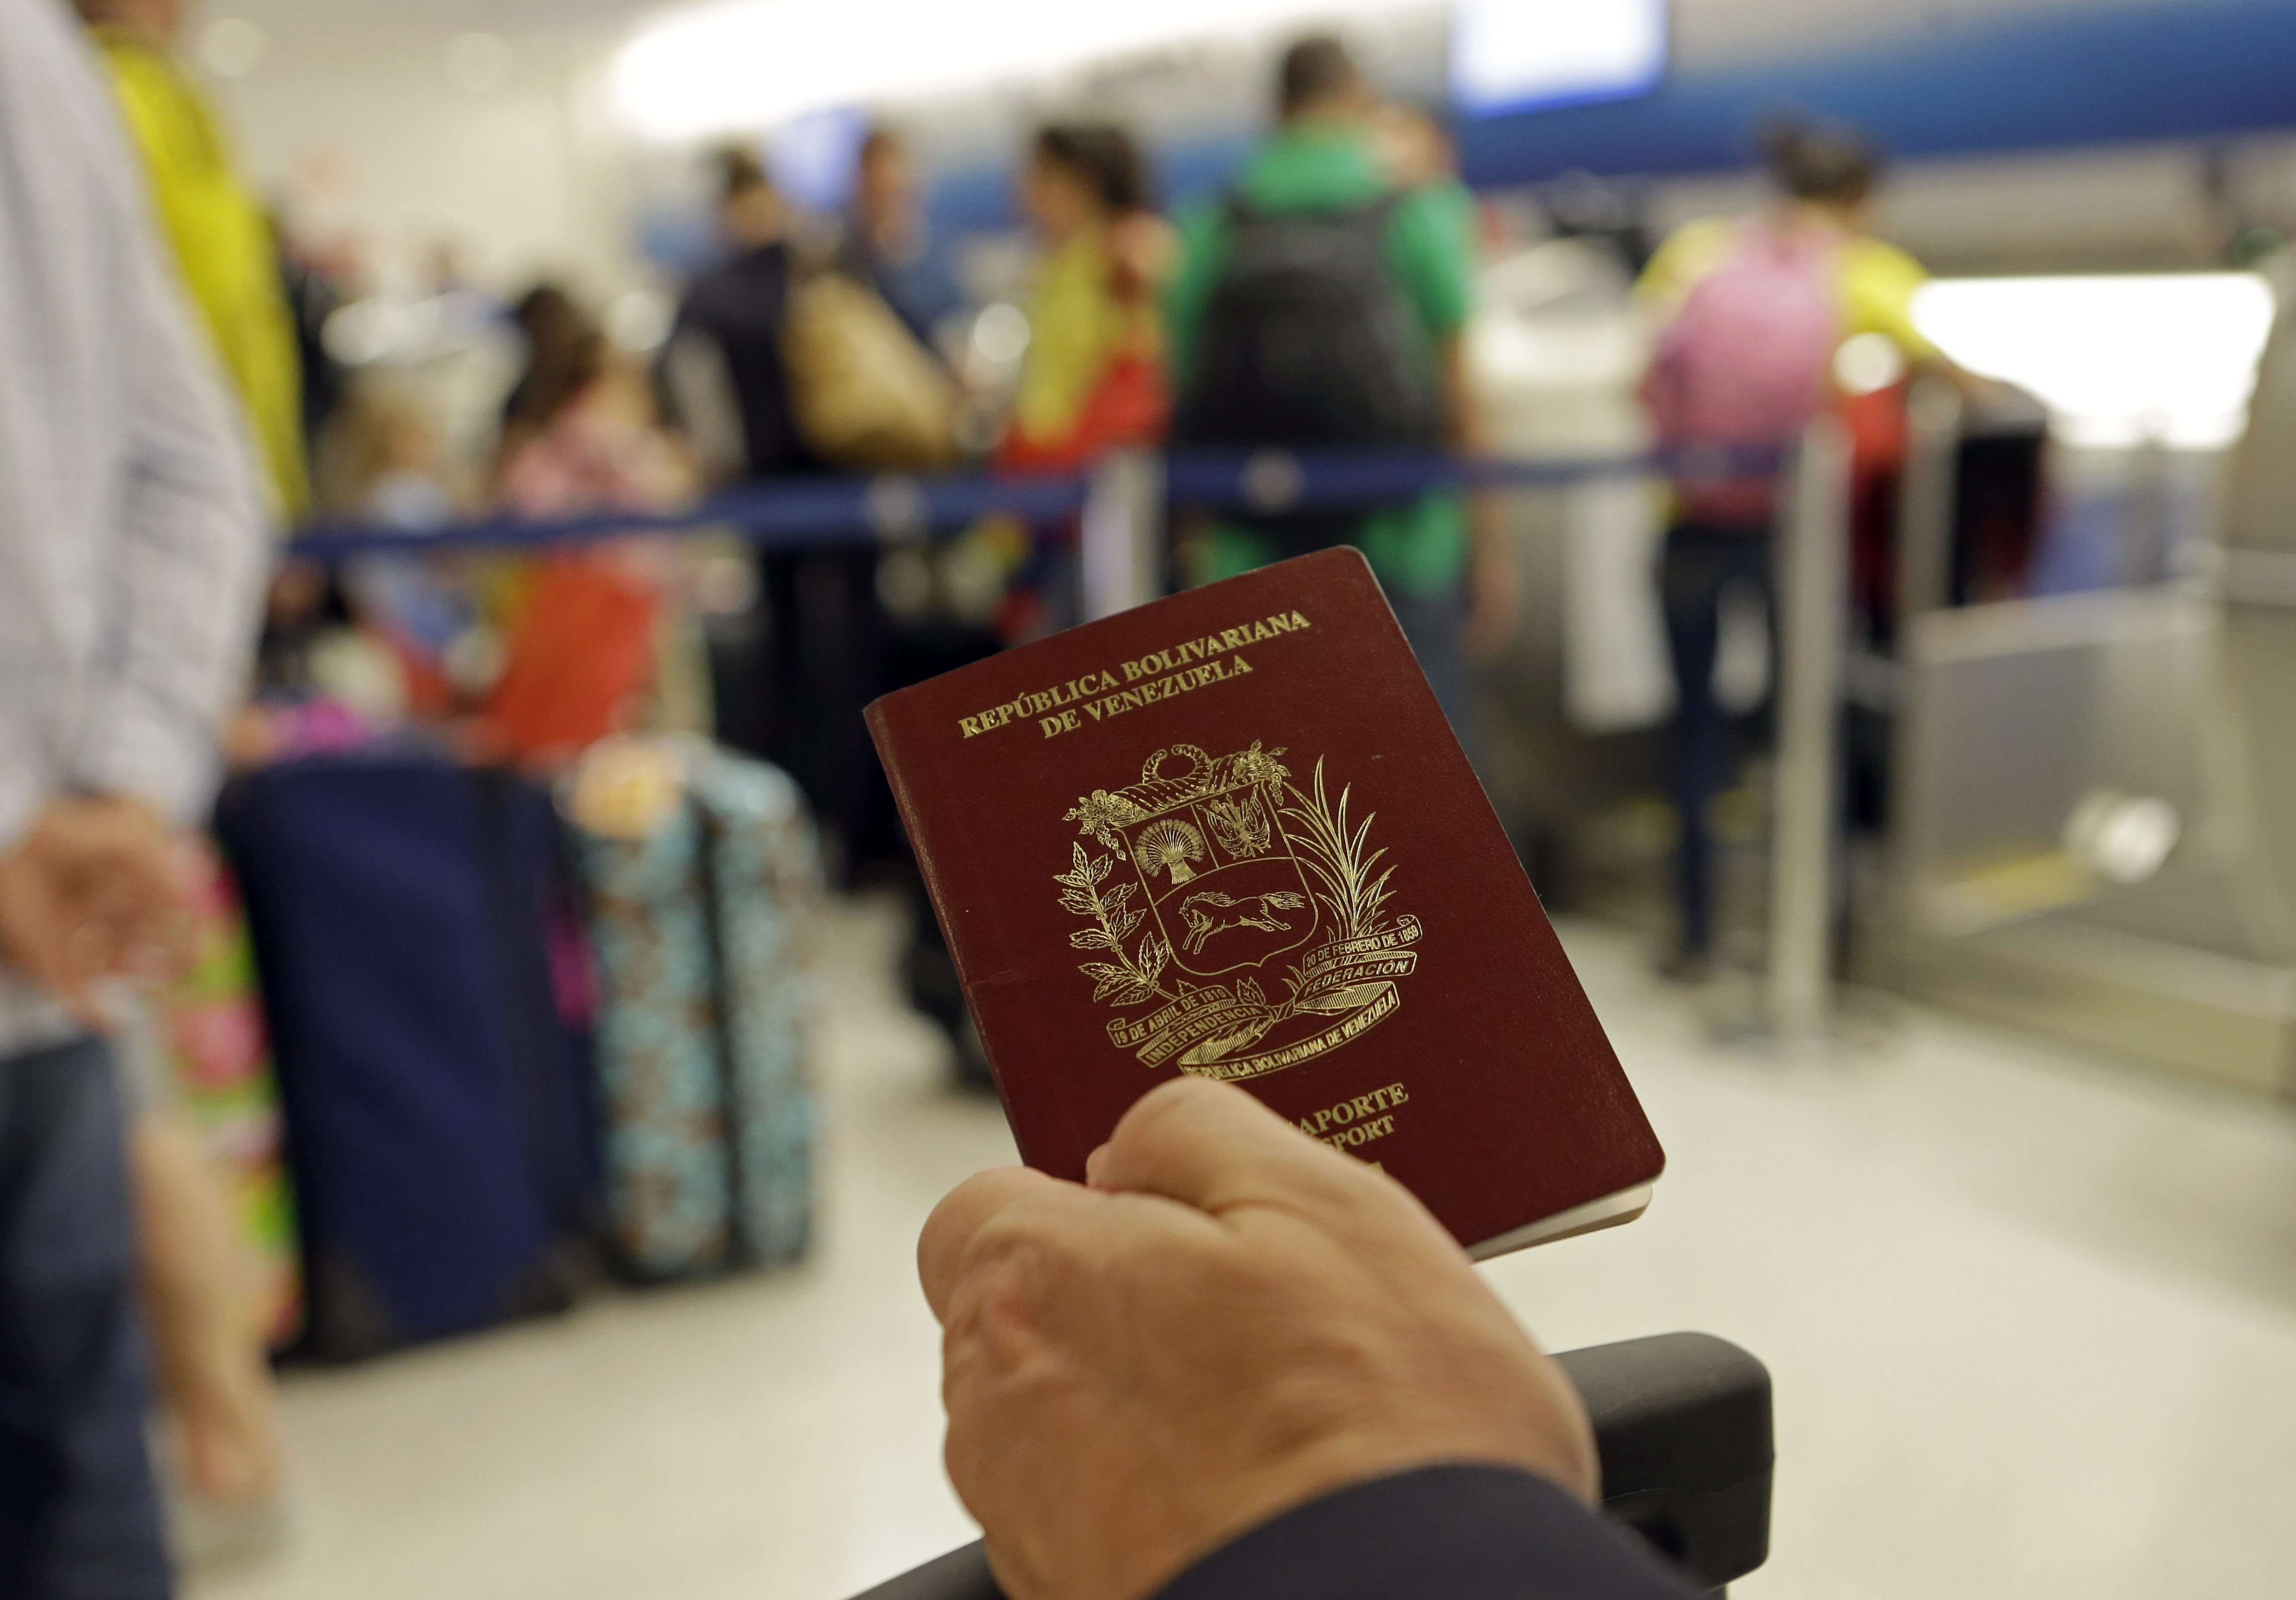 Costo de pasaporte aumenta a 1.524 bolívares